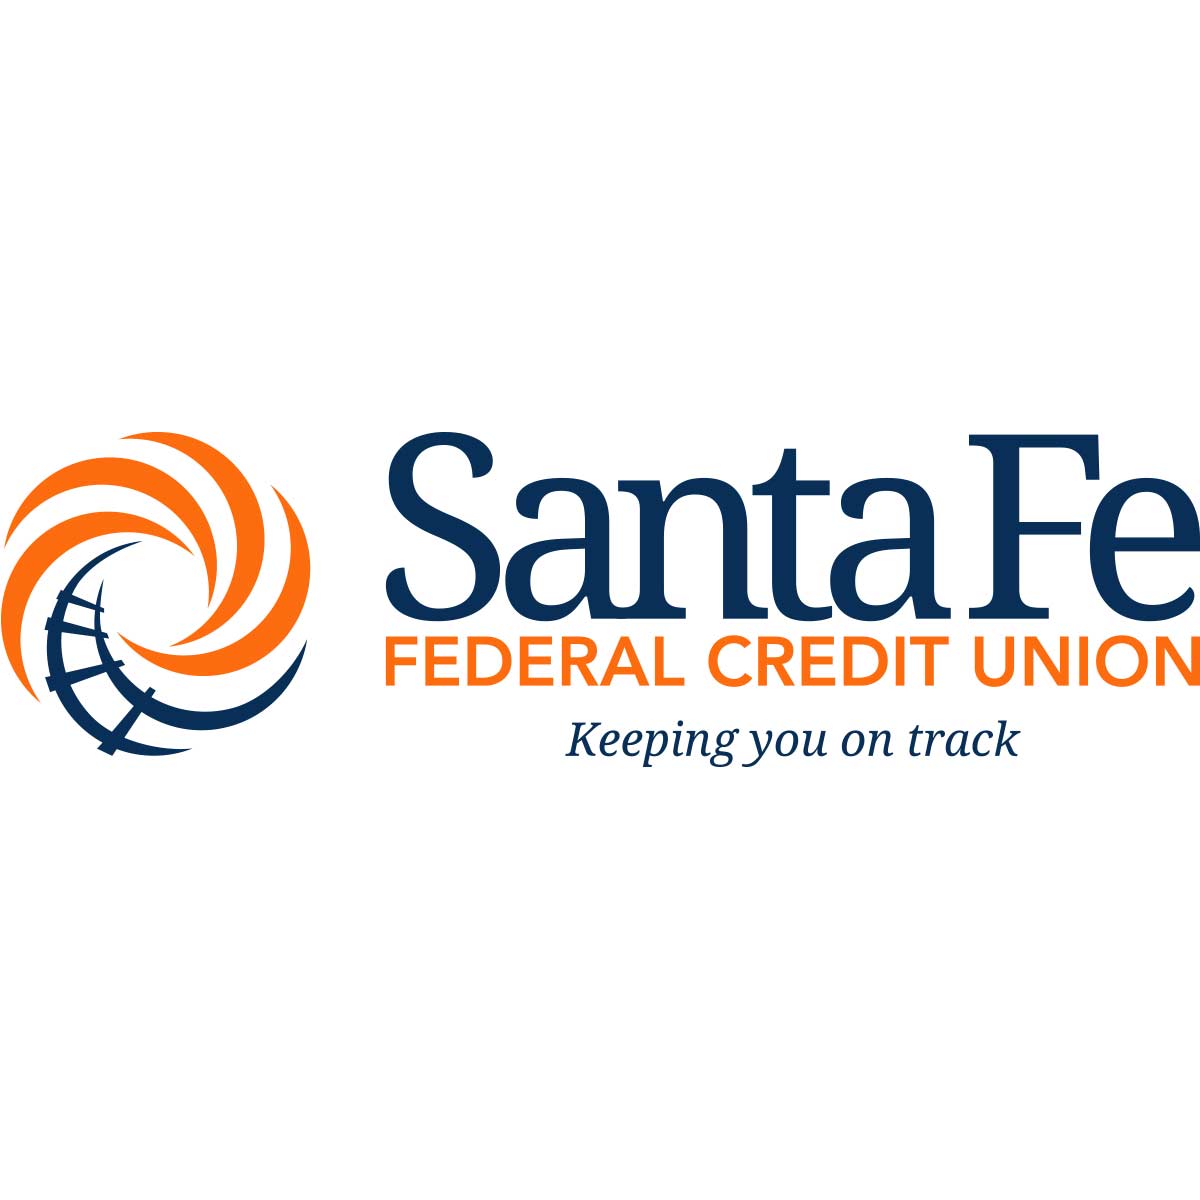 Santa Fe Federal Credit Union